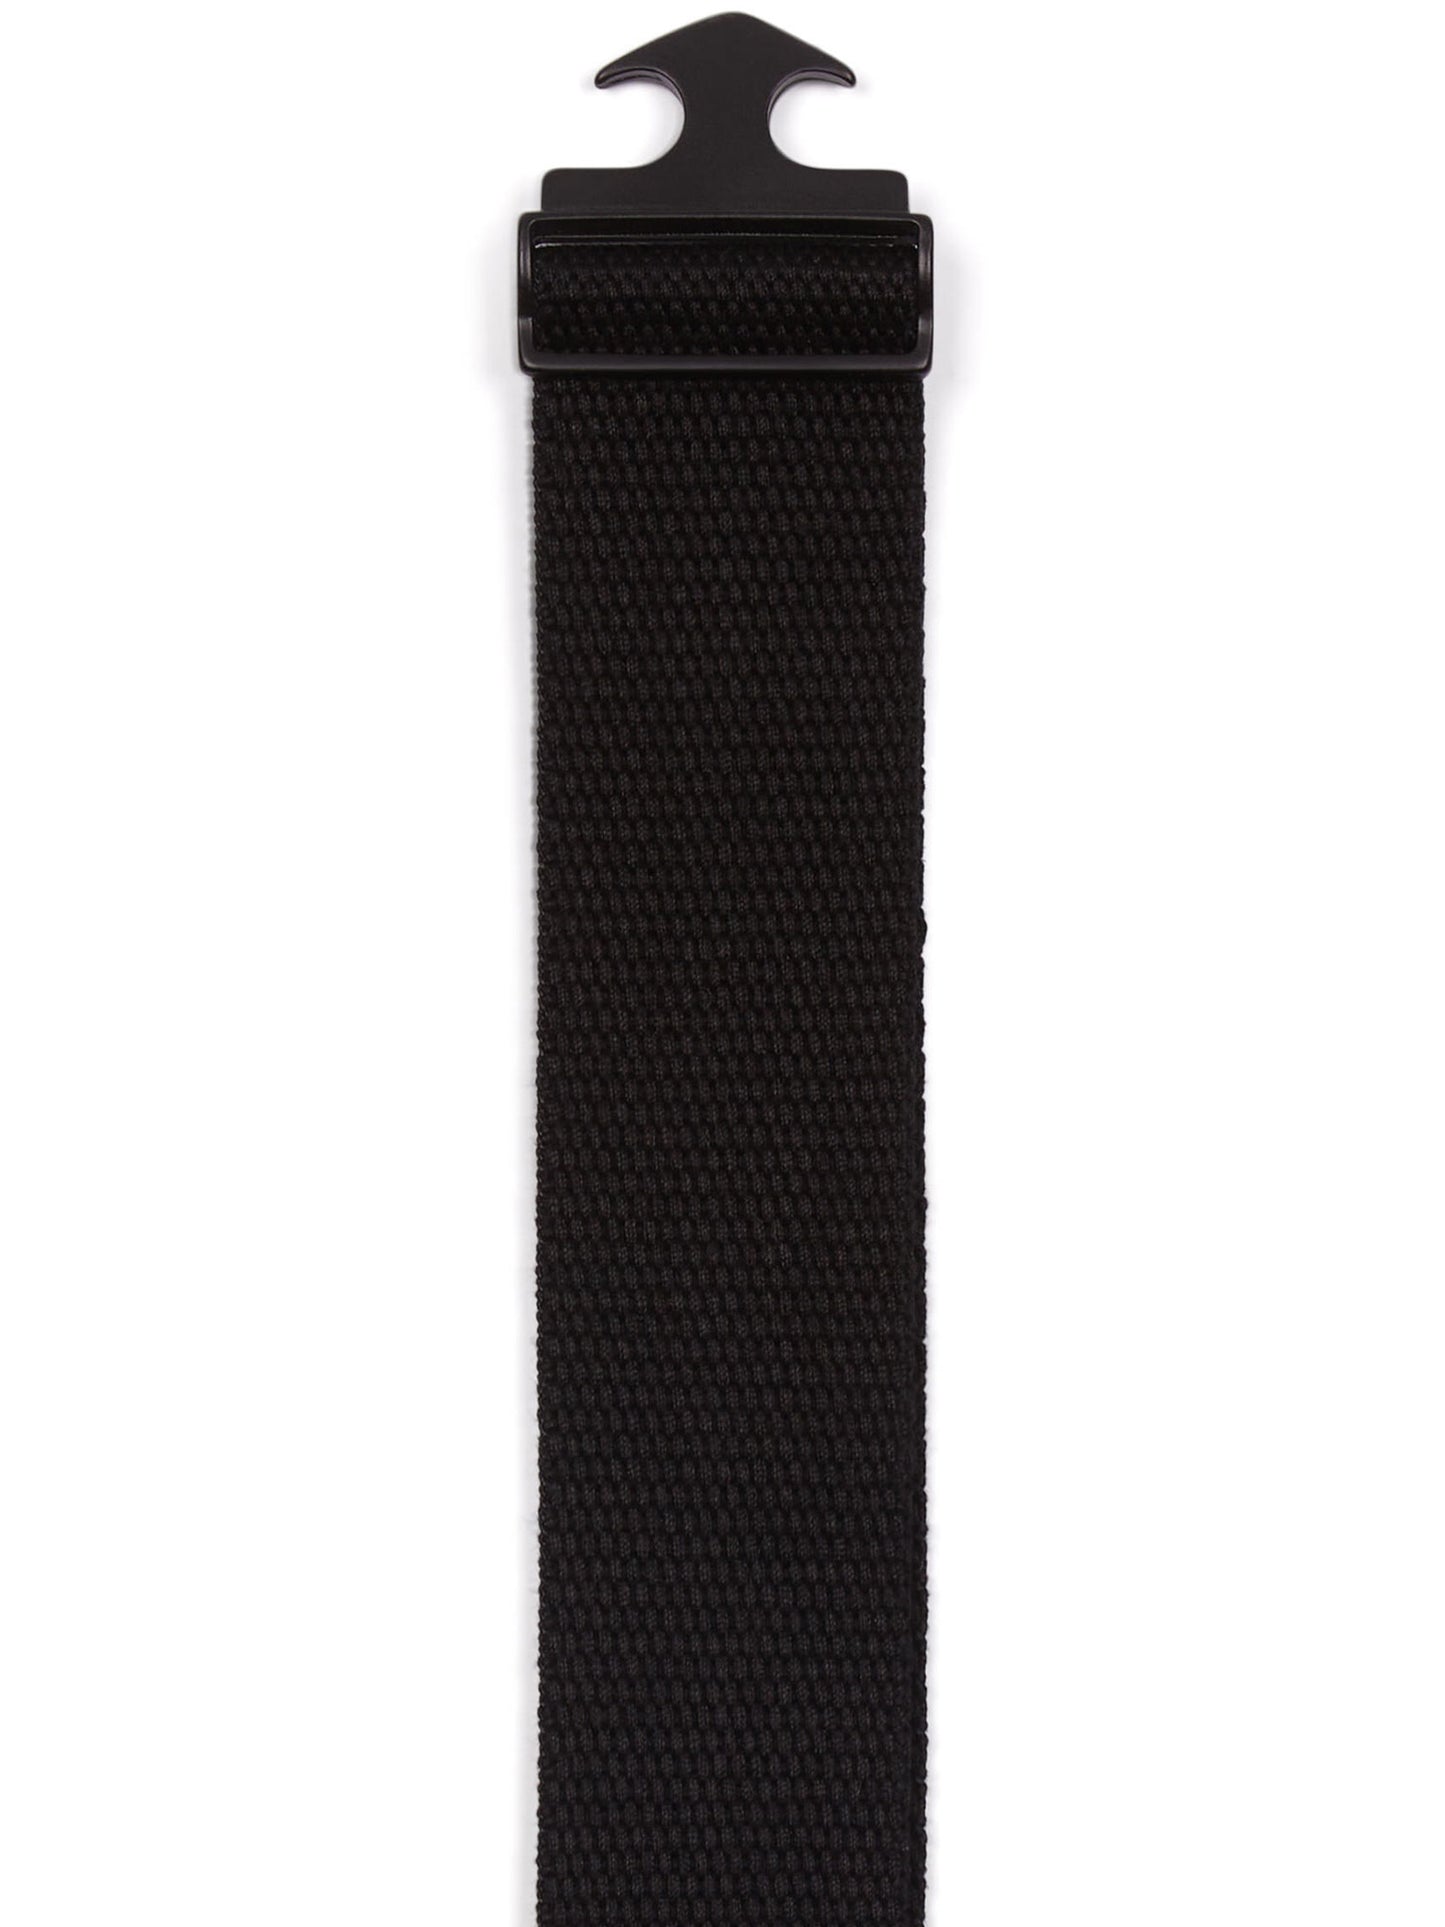 Cinturón de tencel y clip metálico de 4 cm